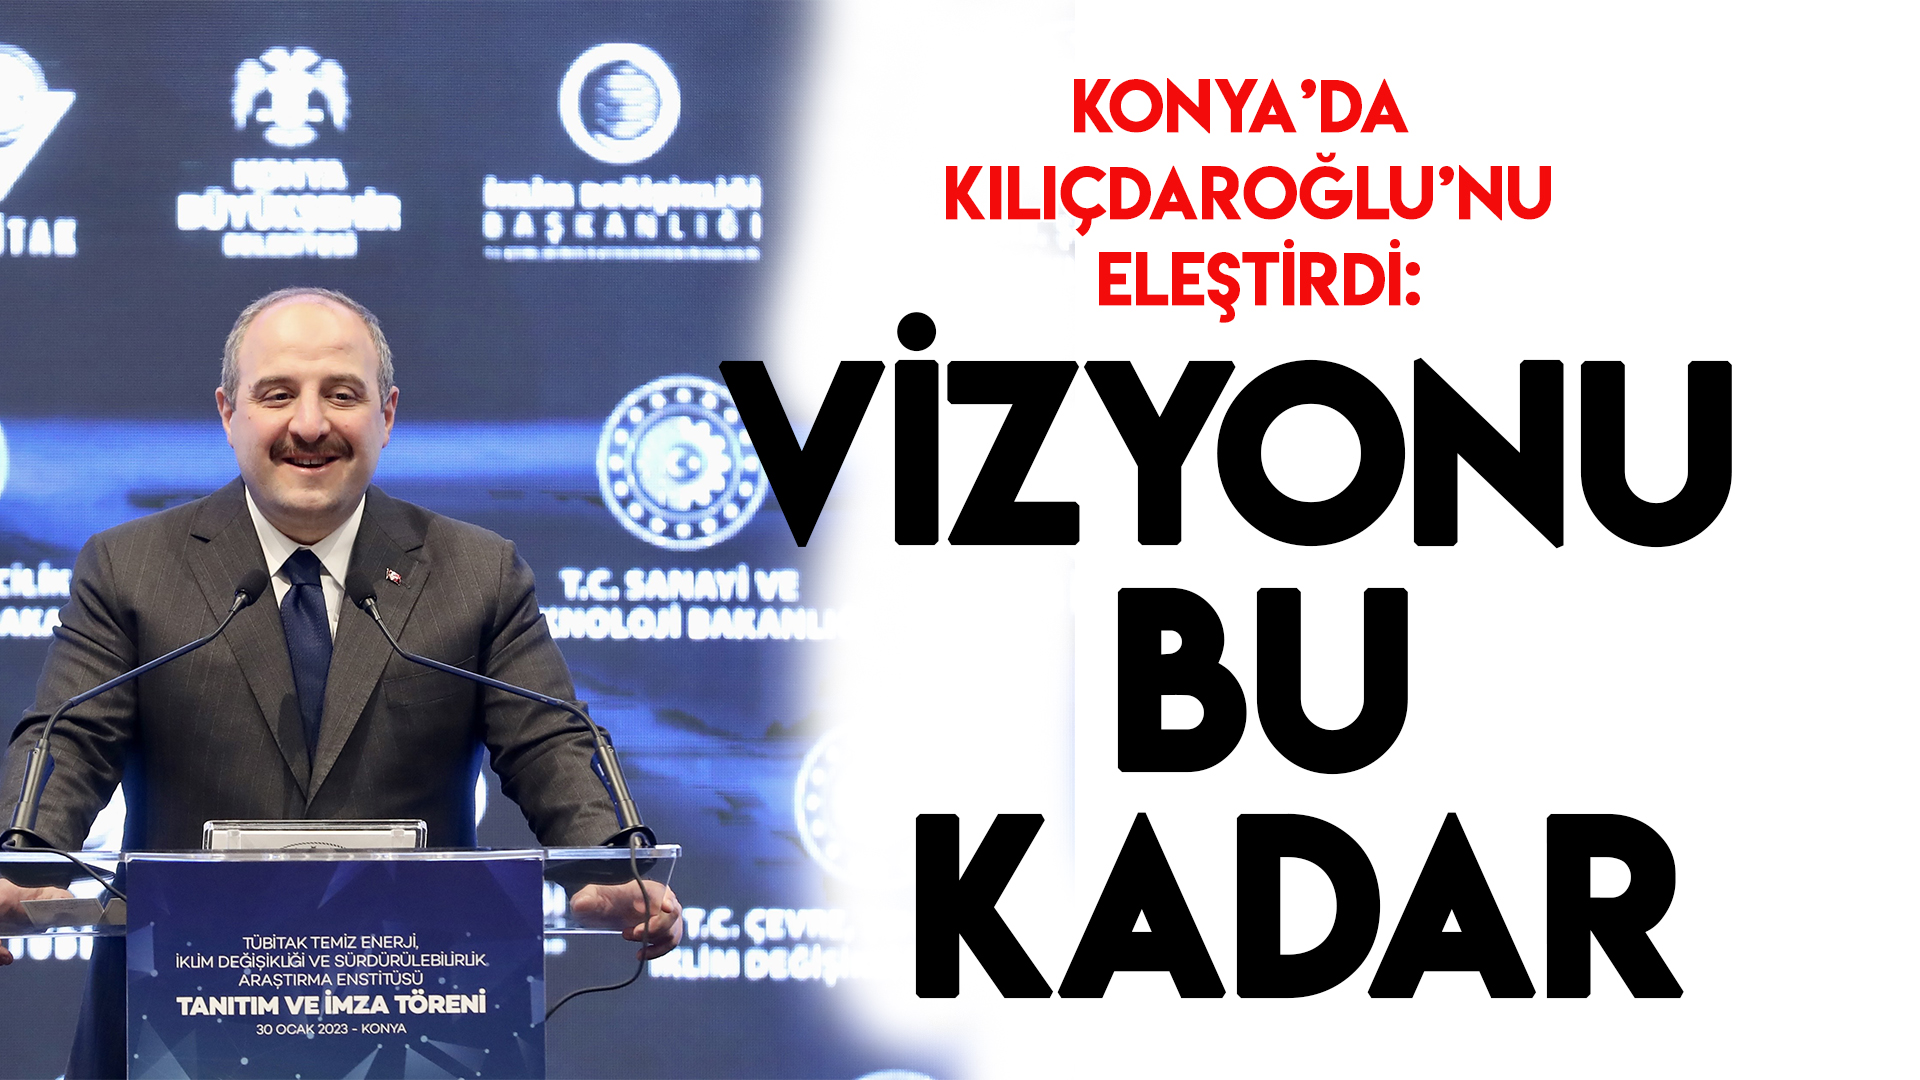 Bakan Mustafa Varank, Konya'da Kılıçdaroğlu'nu eleştirdi: Adamın vizyonu bu kadar